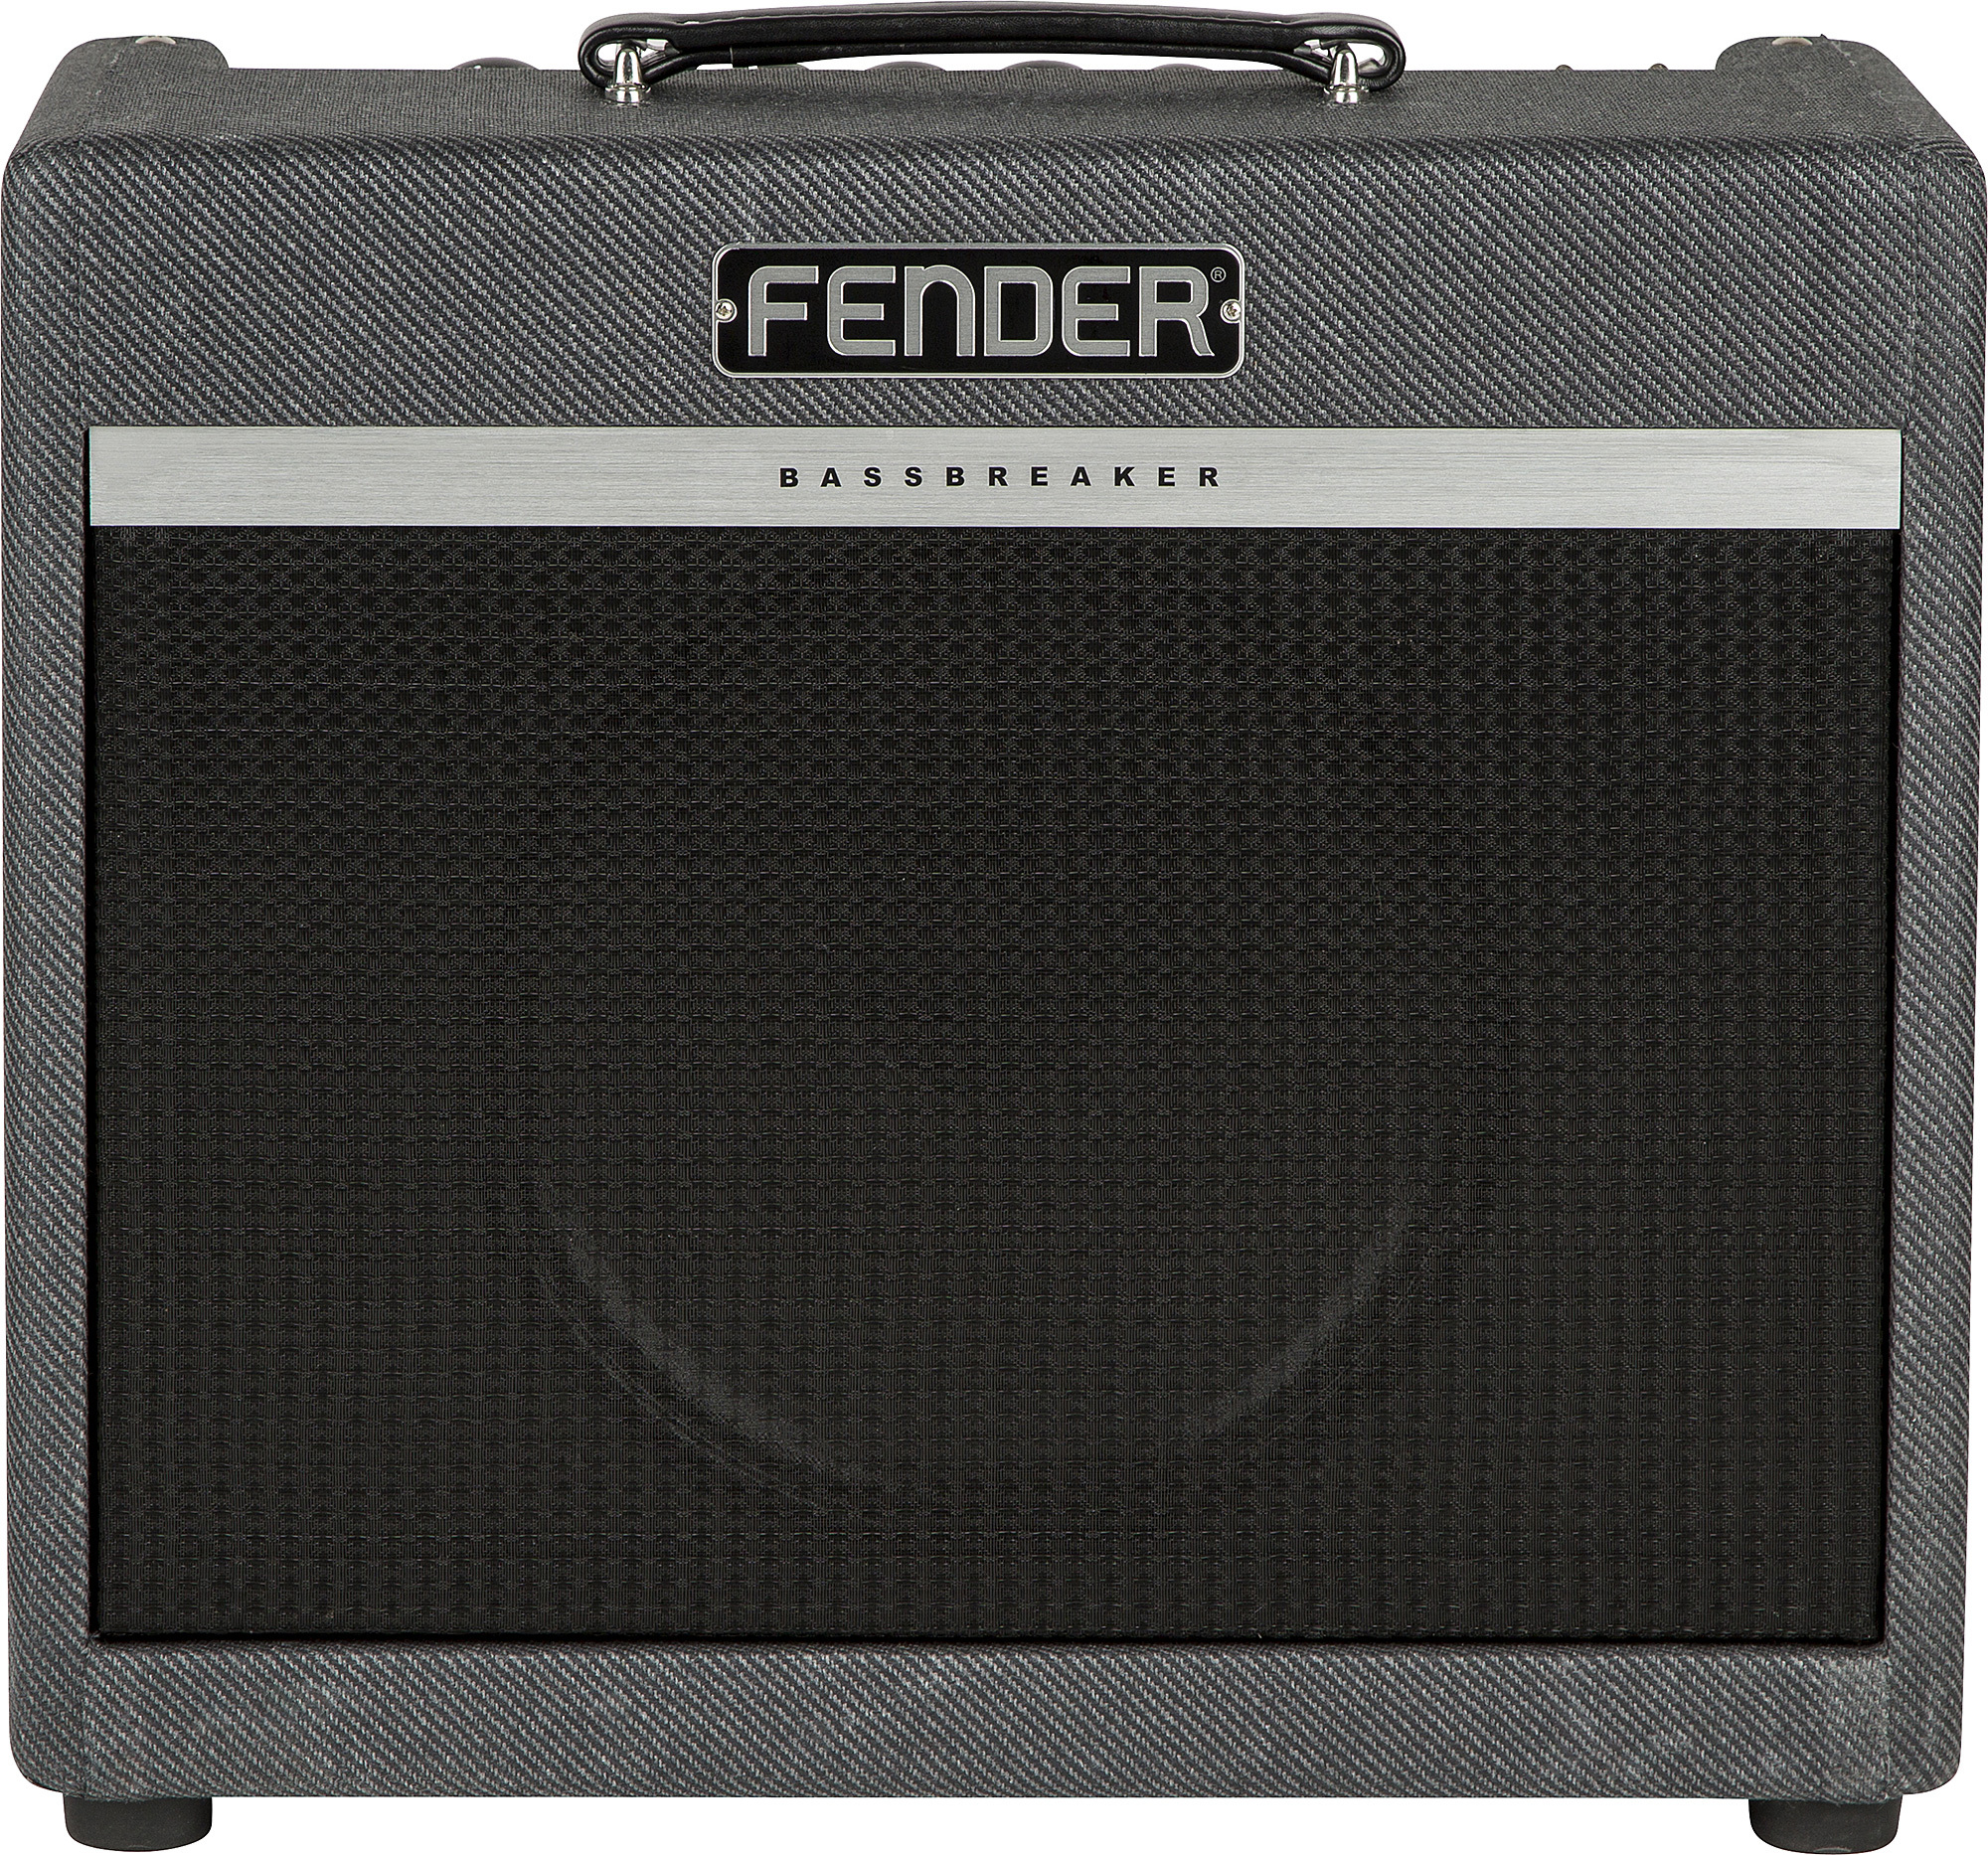 Fender Bassbreaker 15 Combo 15w 1x12 Gray Tweed - Combo voor elektrische gitaar - Main picture